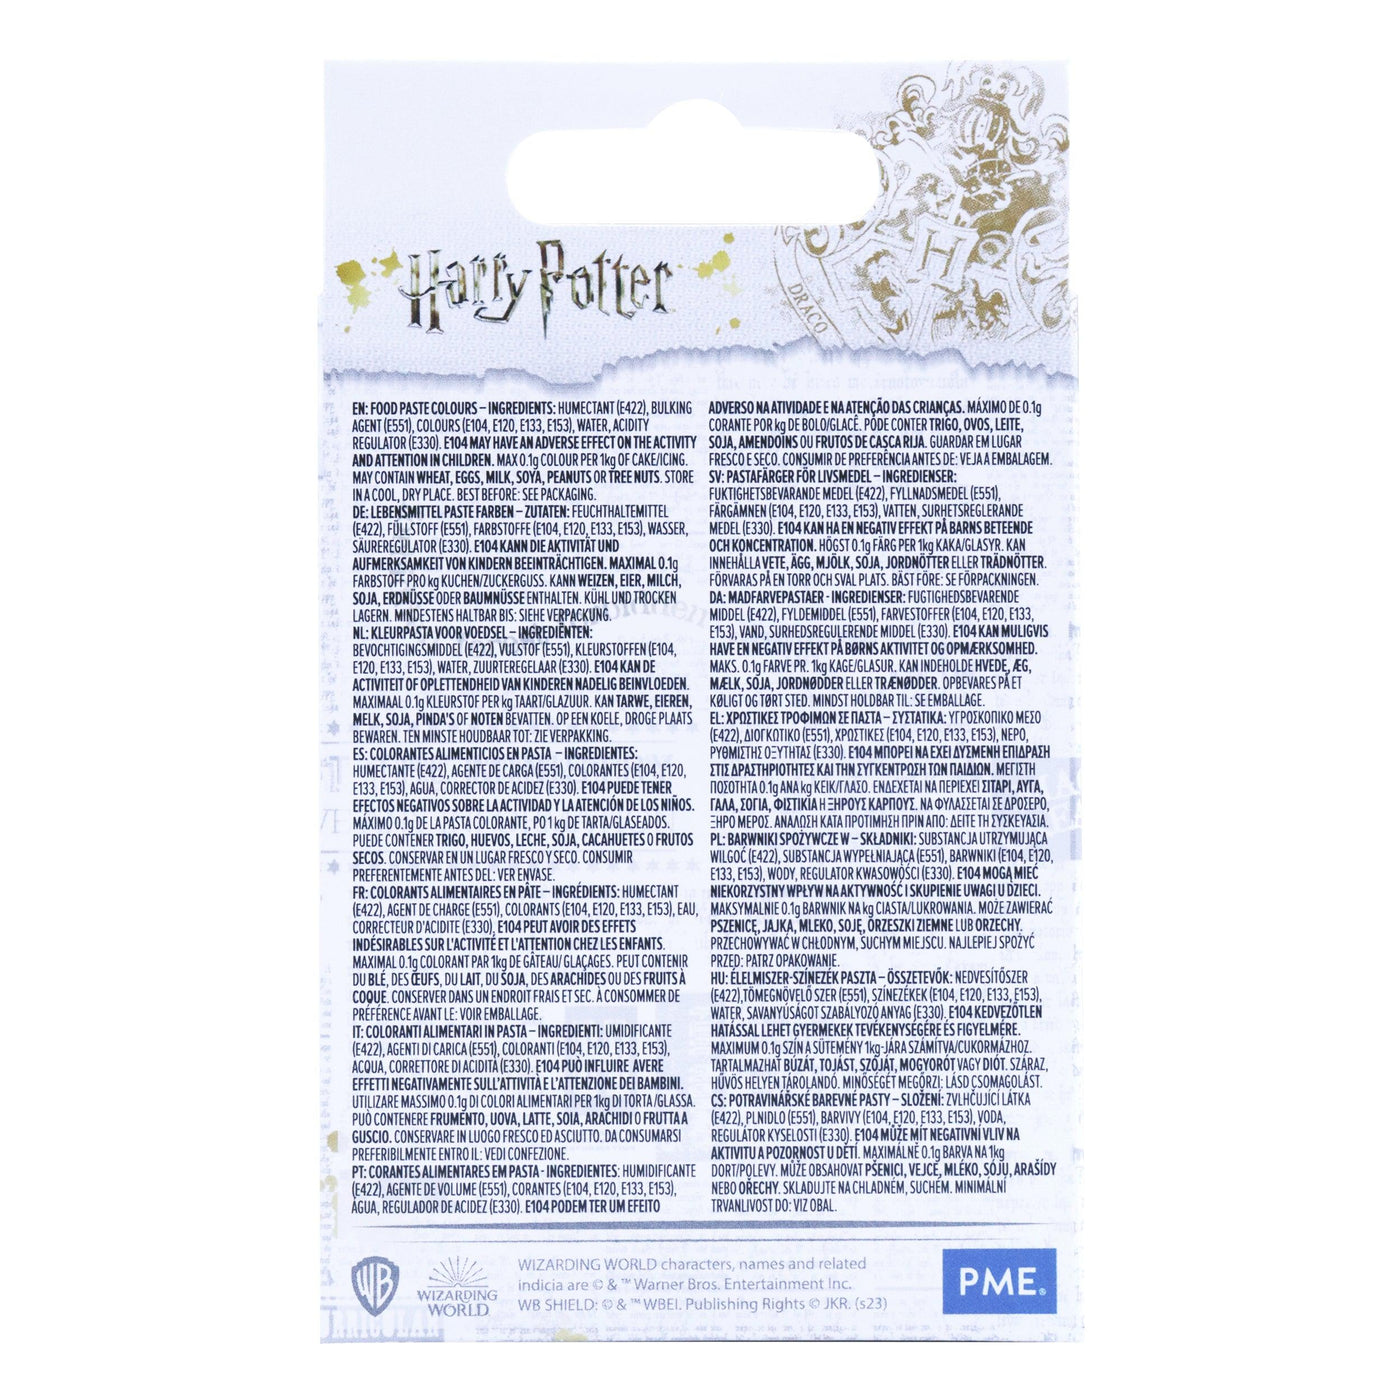 Colorants Harry Potter - Set/6 - PME